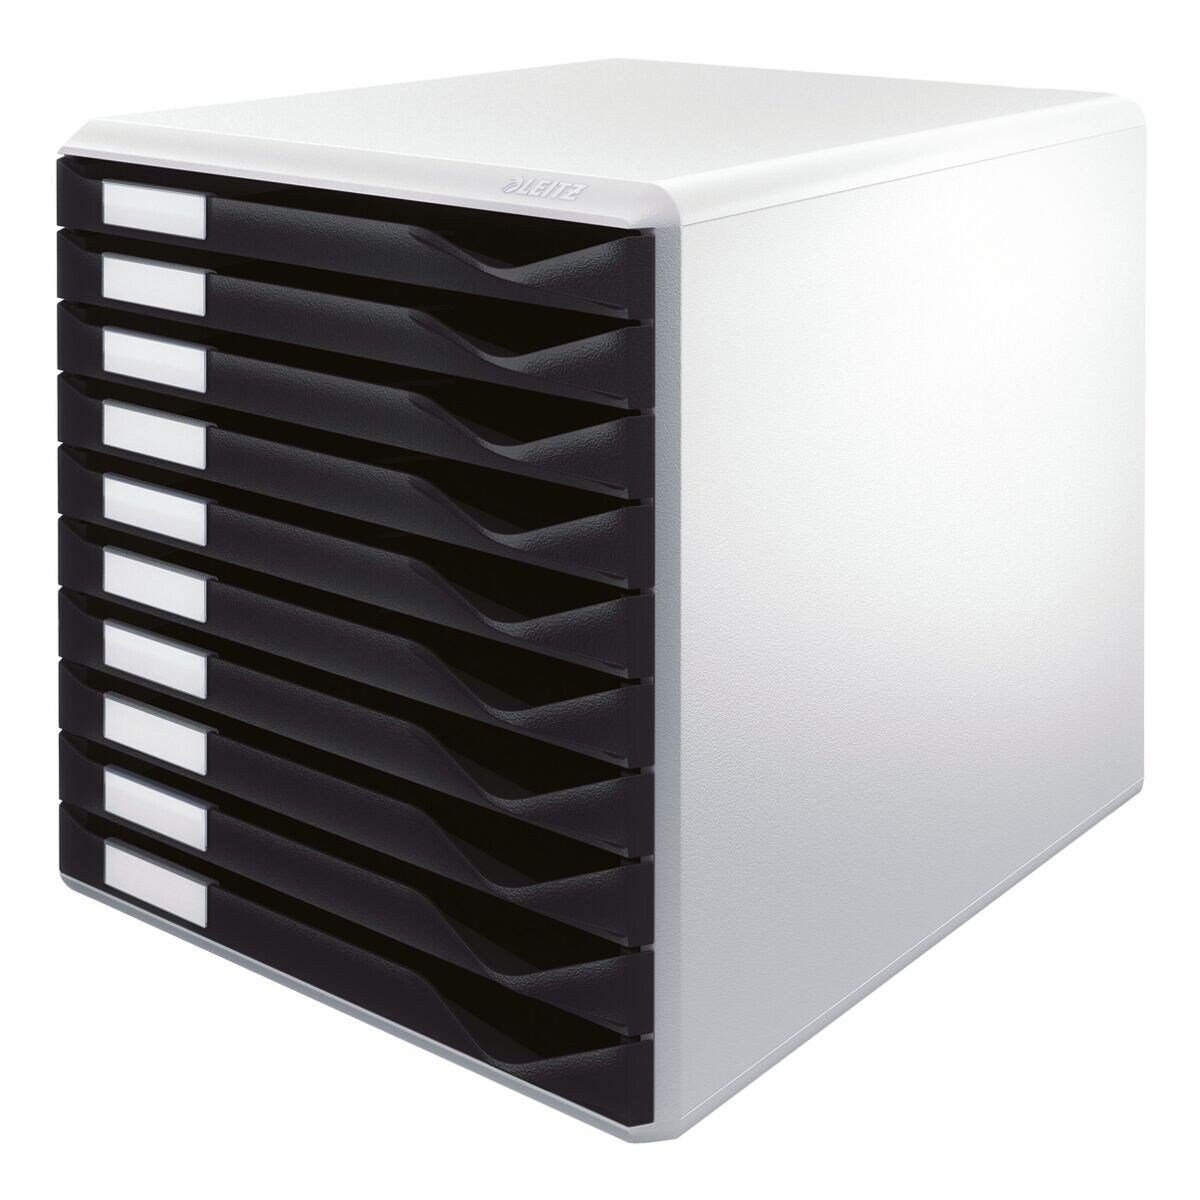 LEITZ Schubladenbox Formular-Set 5281, mit 10 Schubladen, geschlossen schwarz